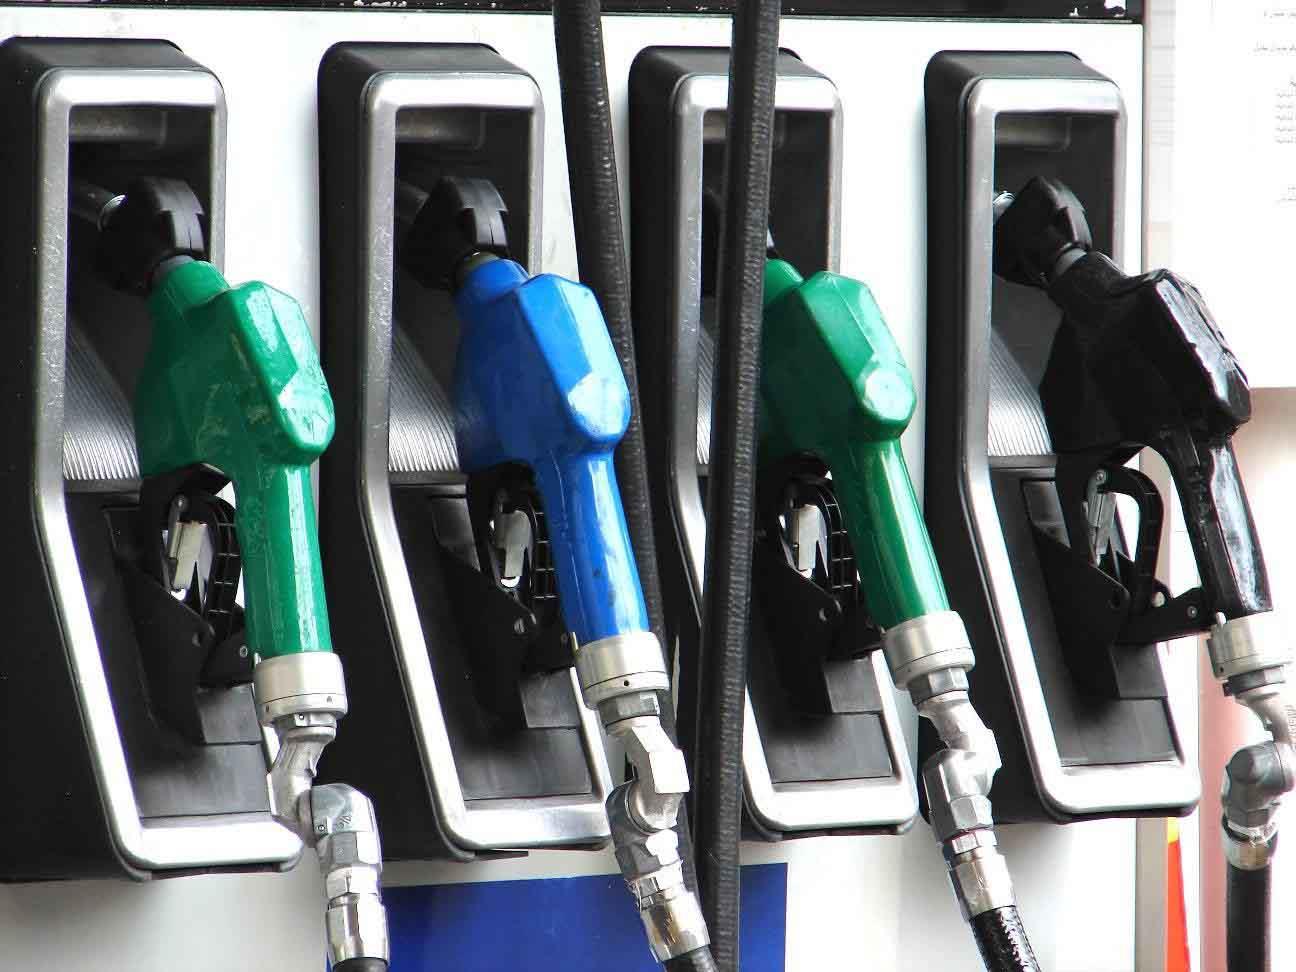 بالأرقام.. الحكومة: الغاز الطبيعي للسيارات يوفر للمستهلك 60% من تكلفة الوقود